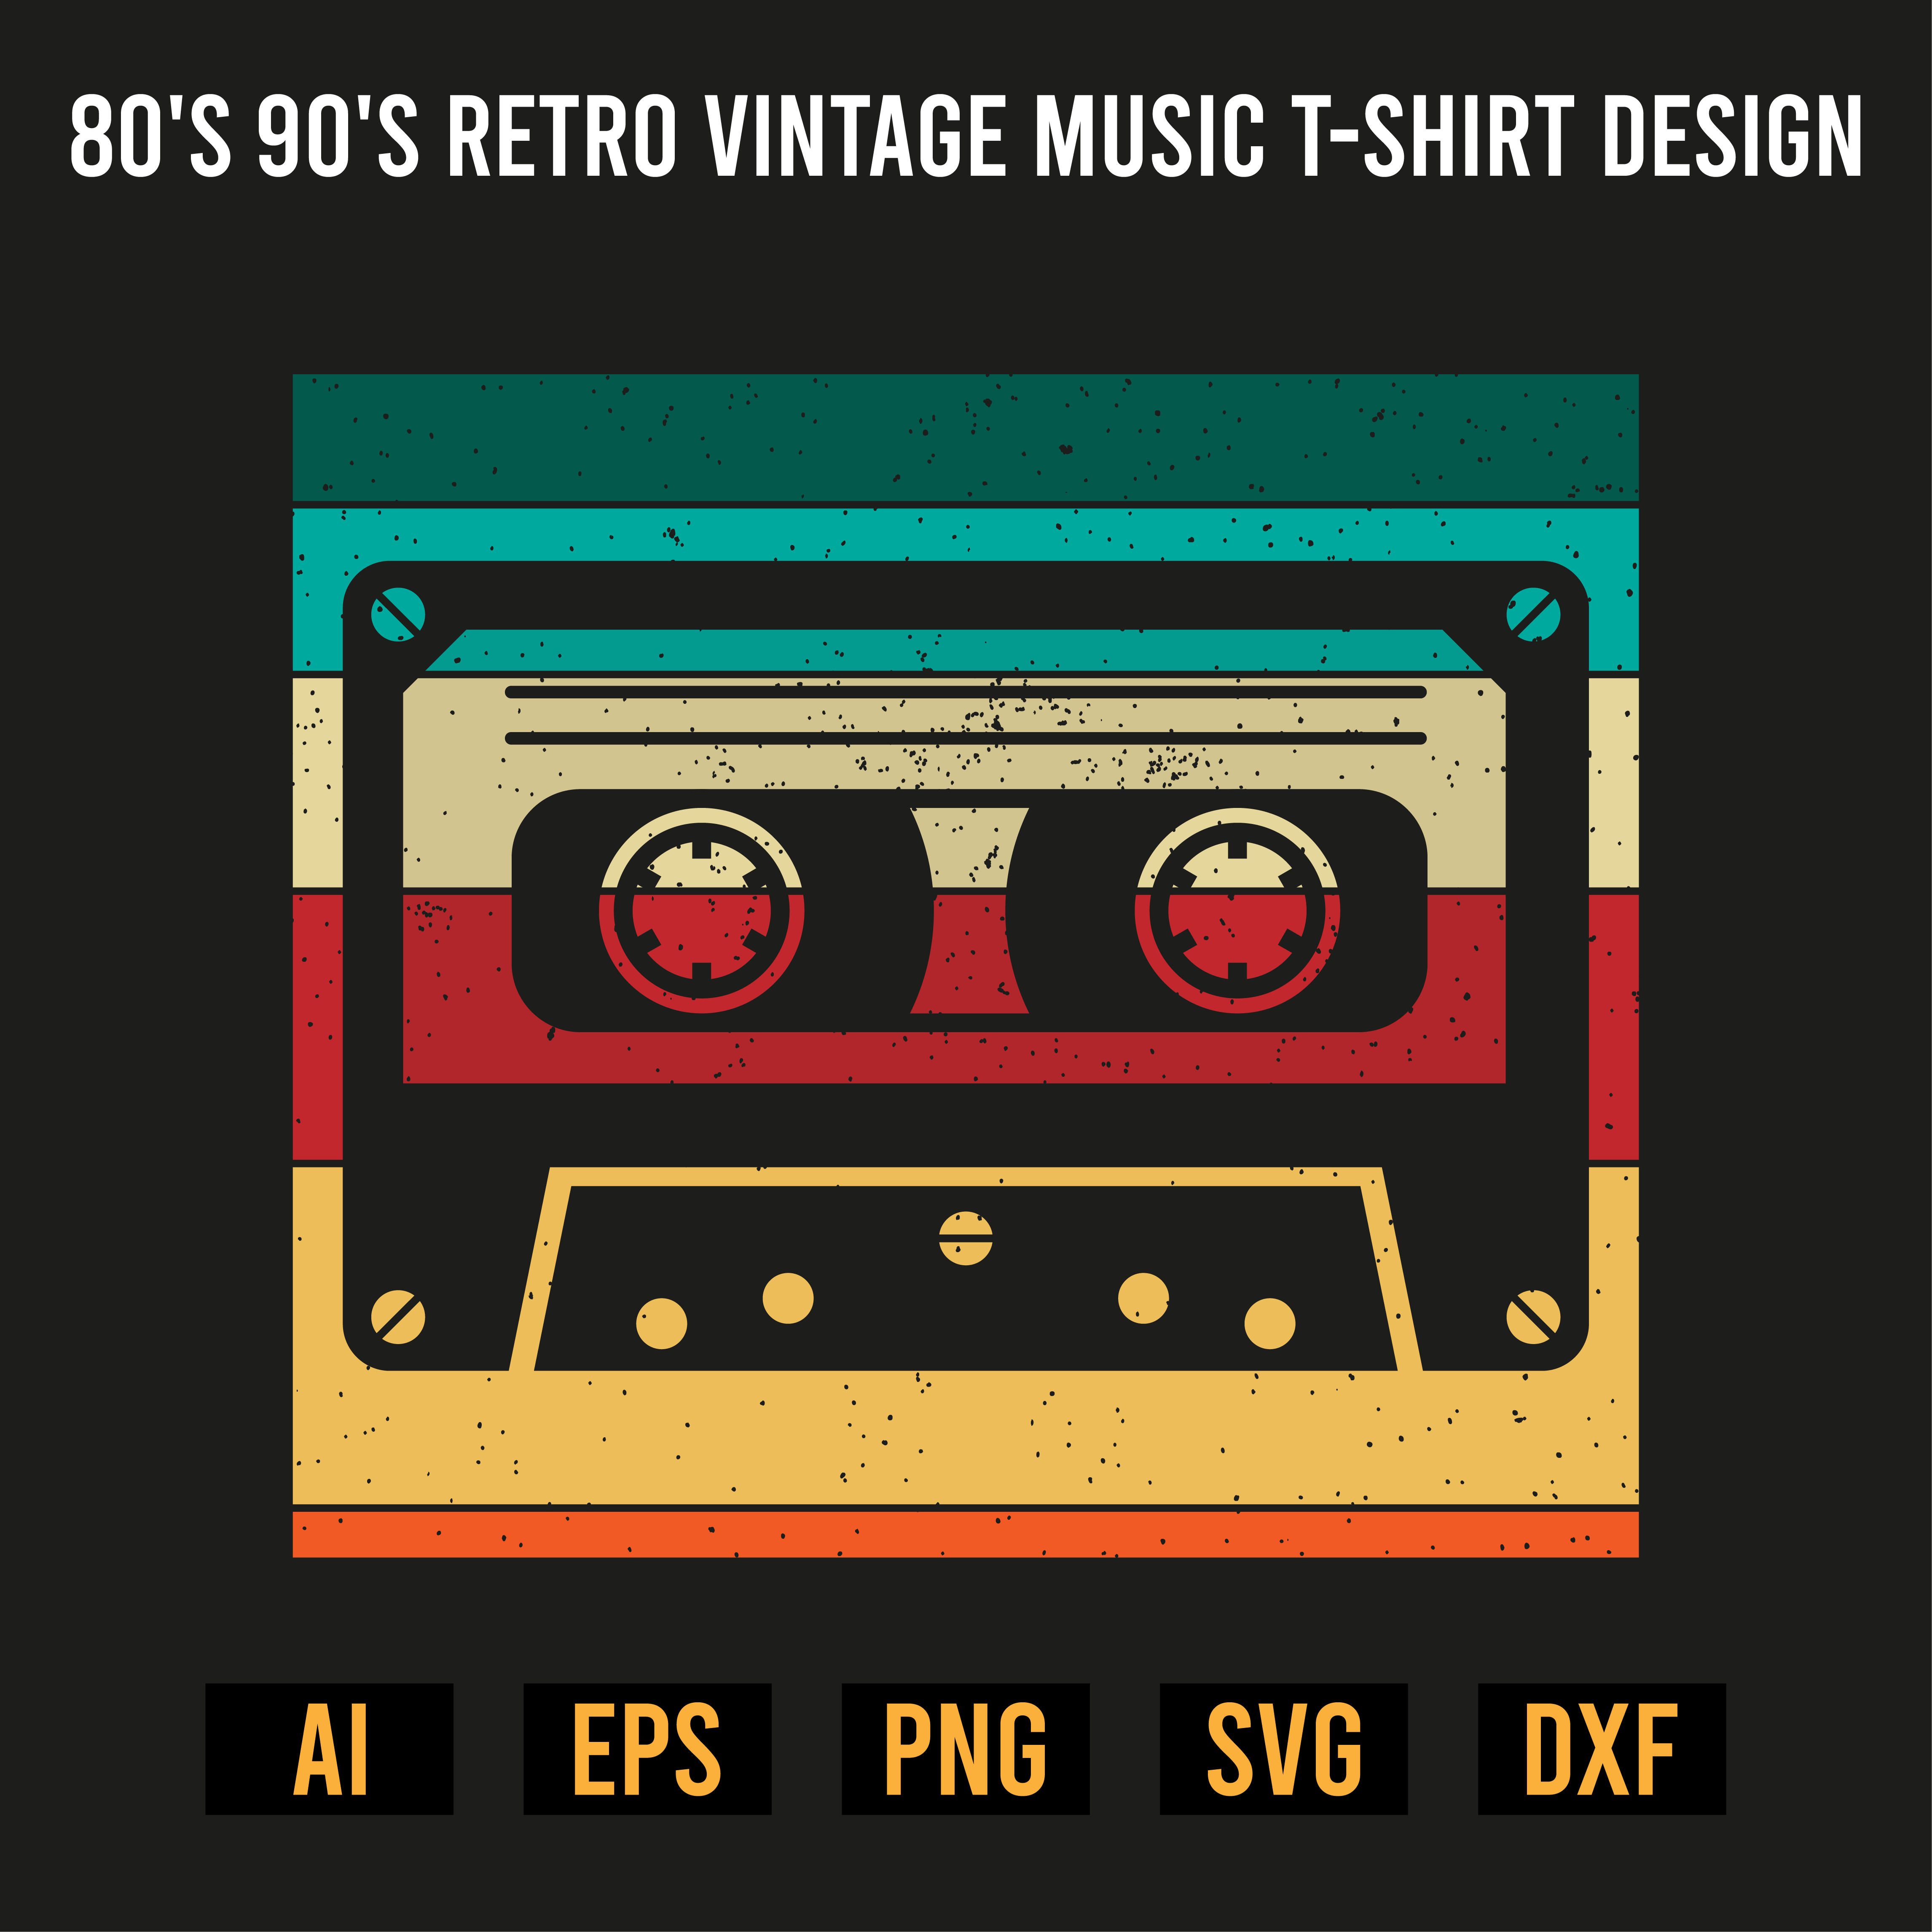 80's 90's Retro Vintage Music T-Shirt Design preview image.